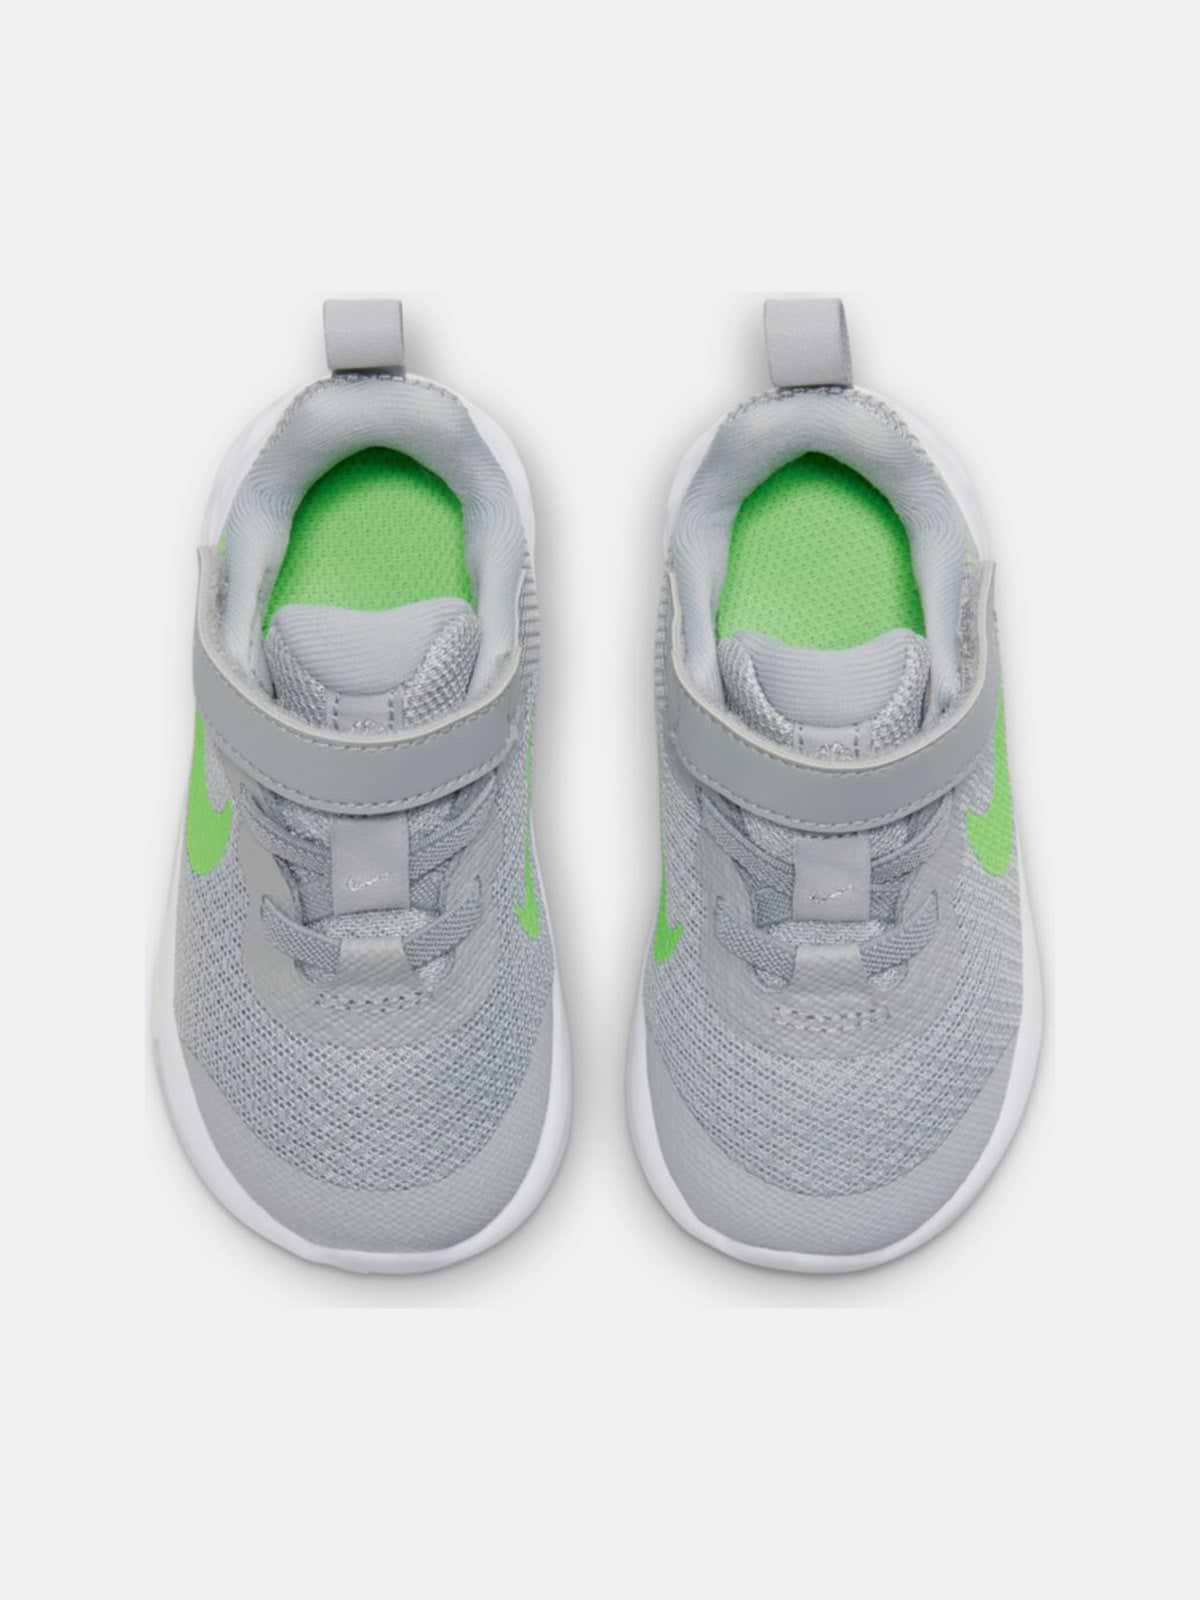 נעלי ספורט REVOLUTION 6  / תינוקות- Nike|נייק